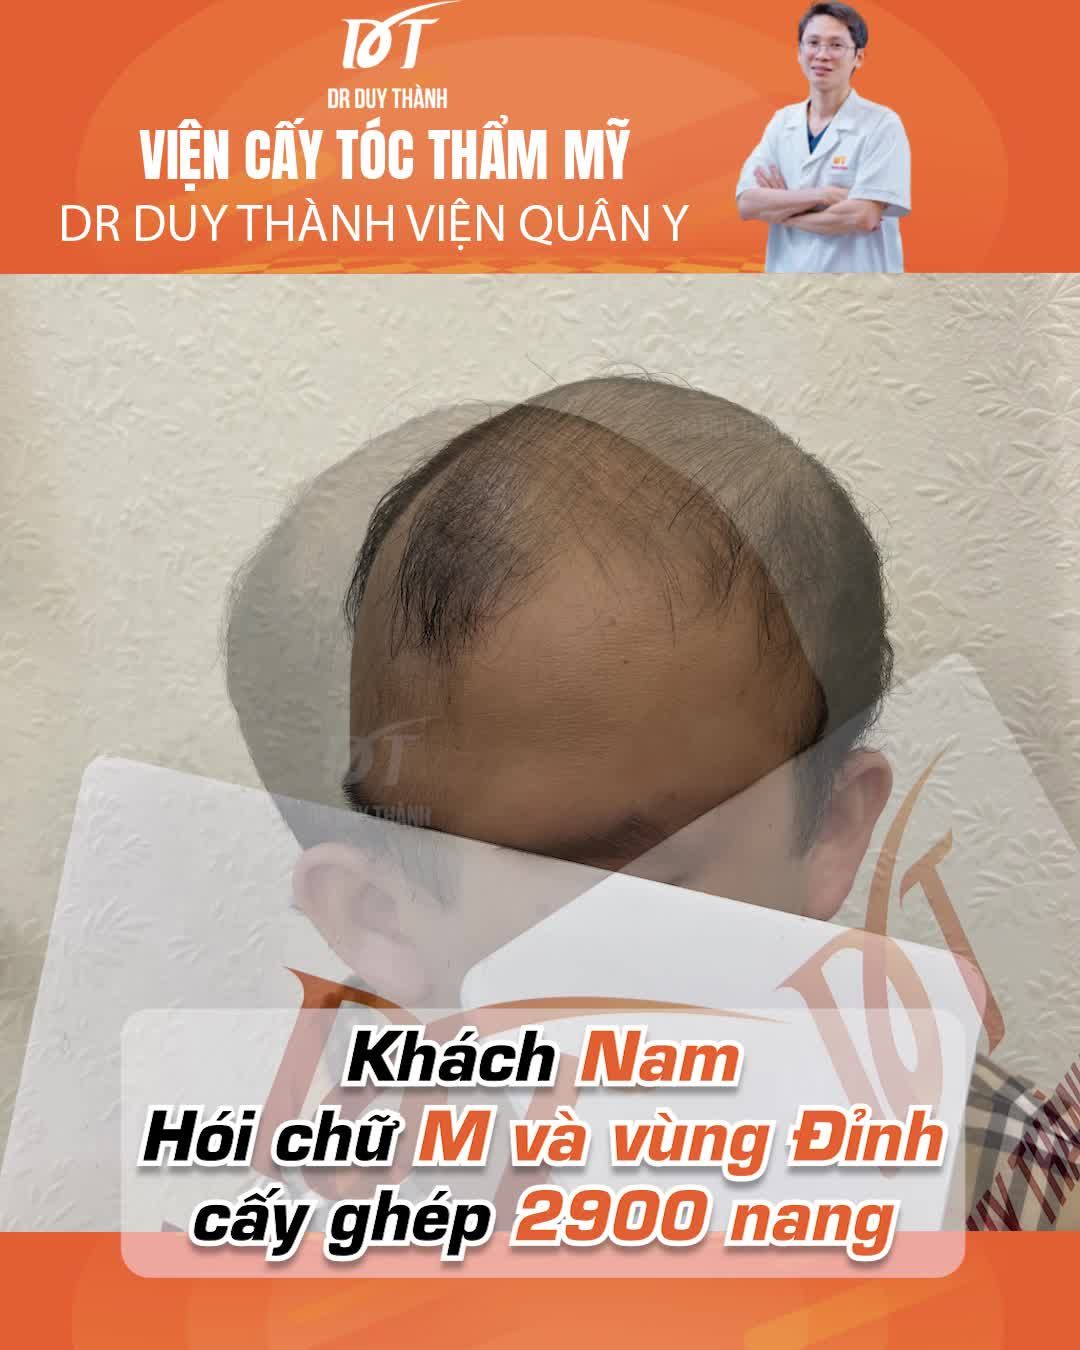 10 ngày bong vảy, kết quả sau cấy 2900 nang tóc - Dr Duy Thành